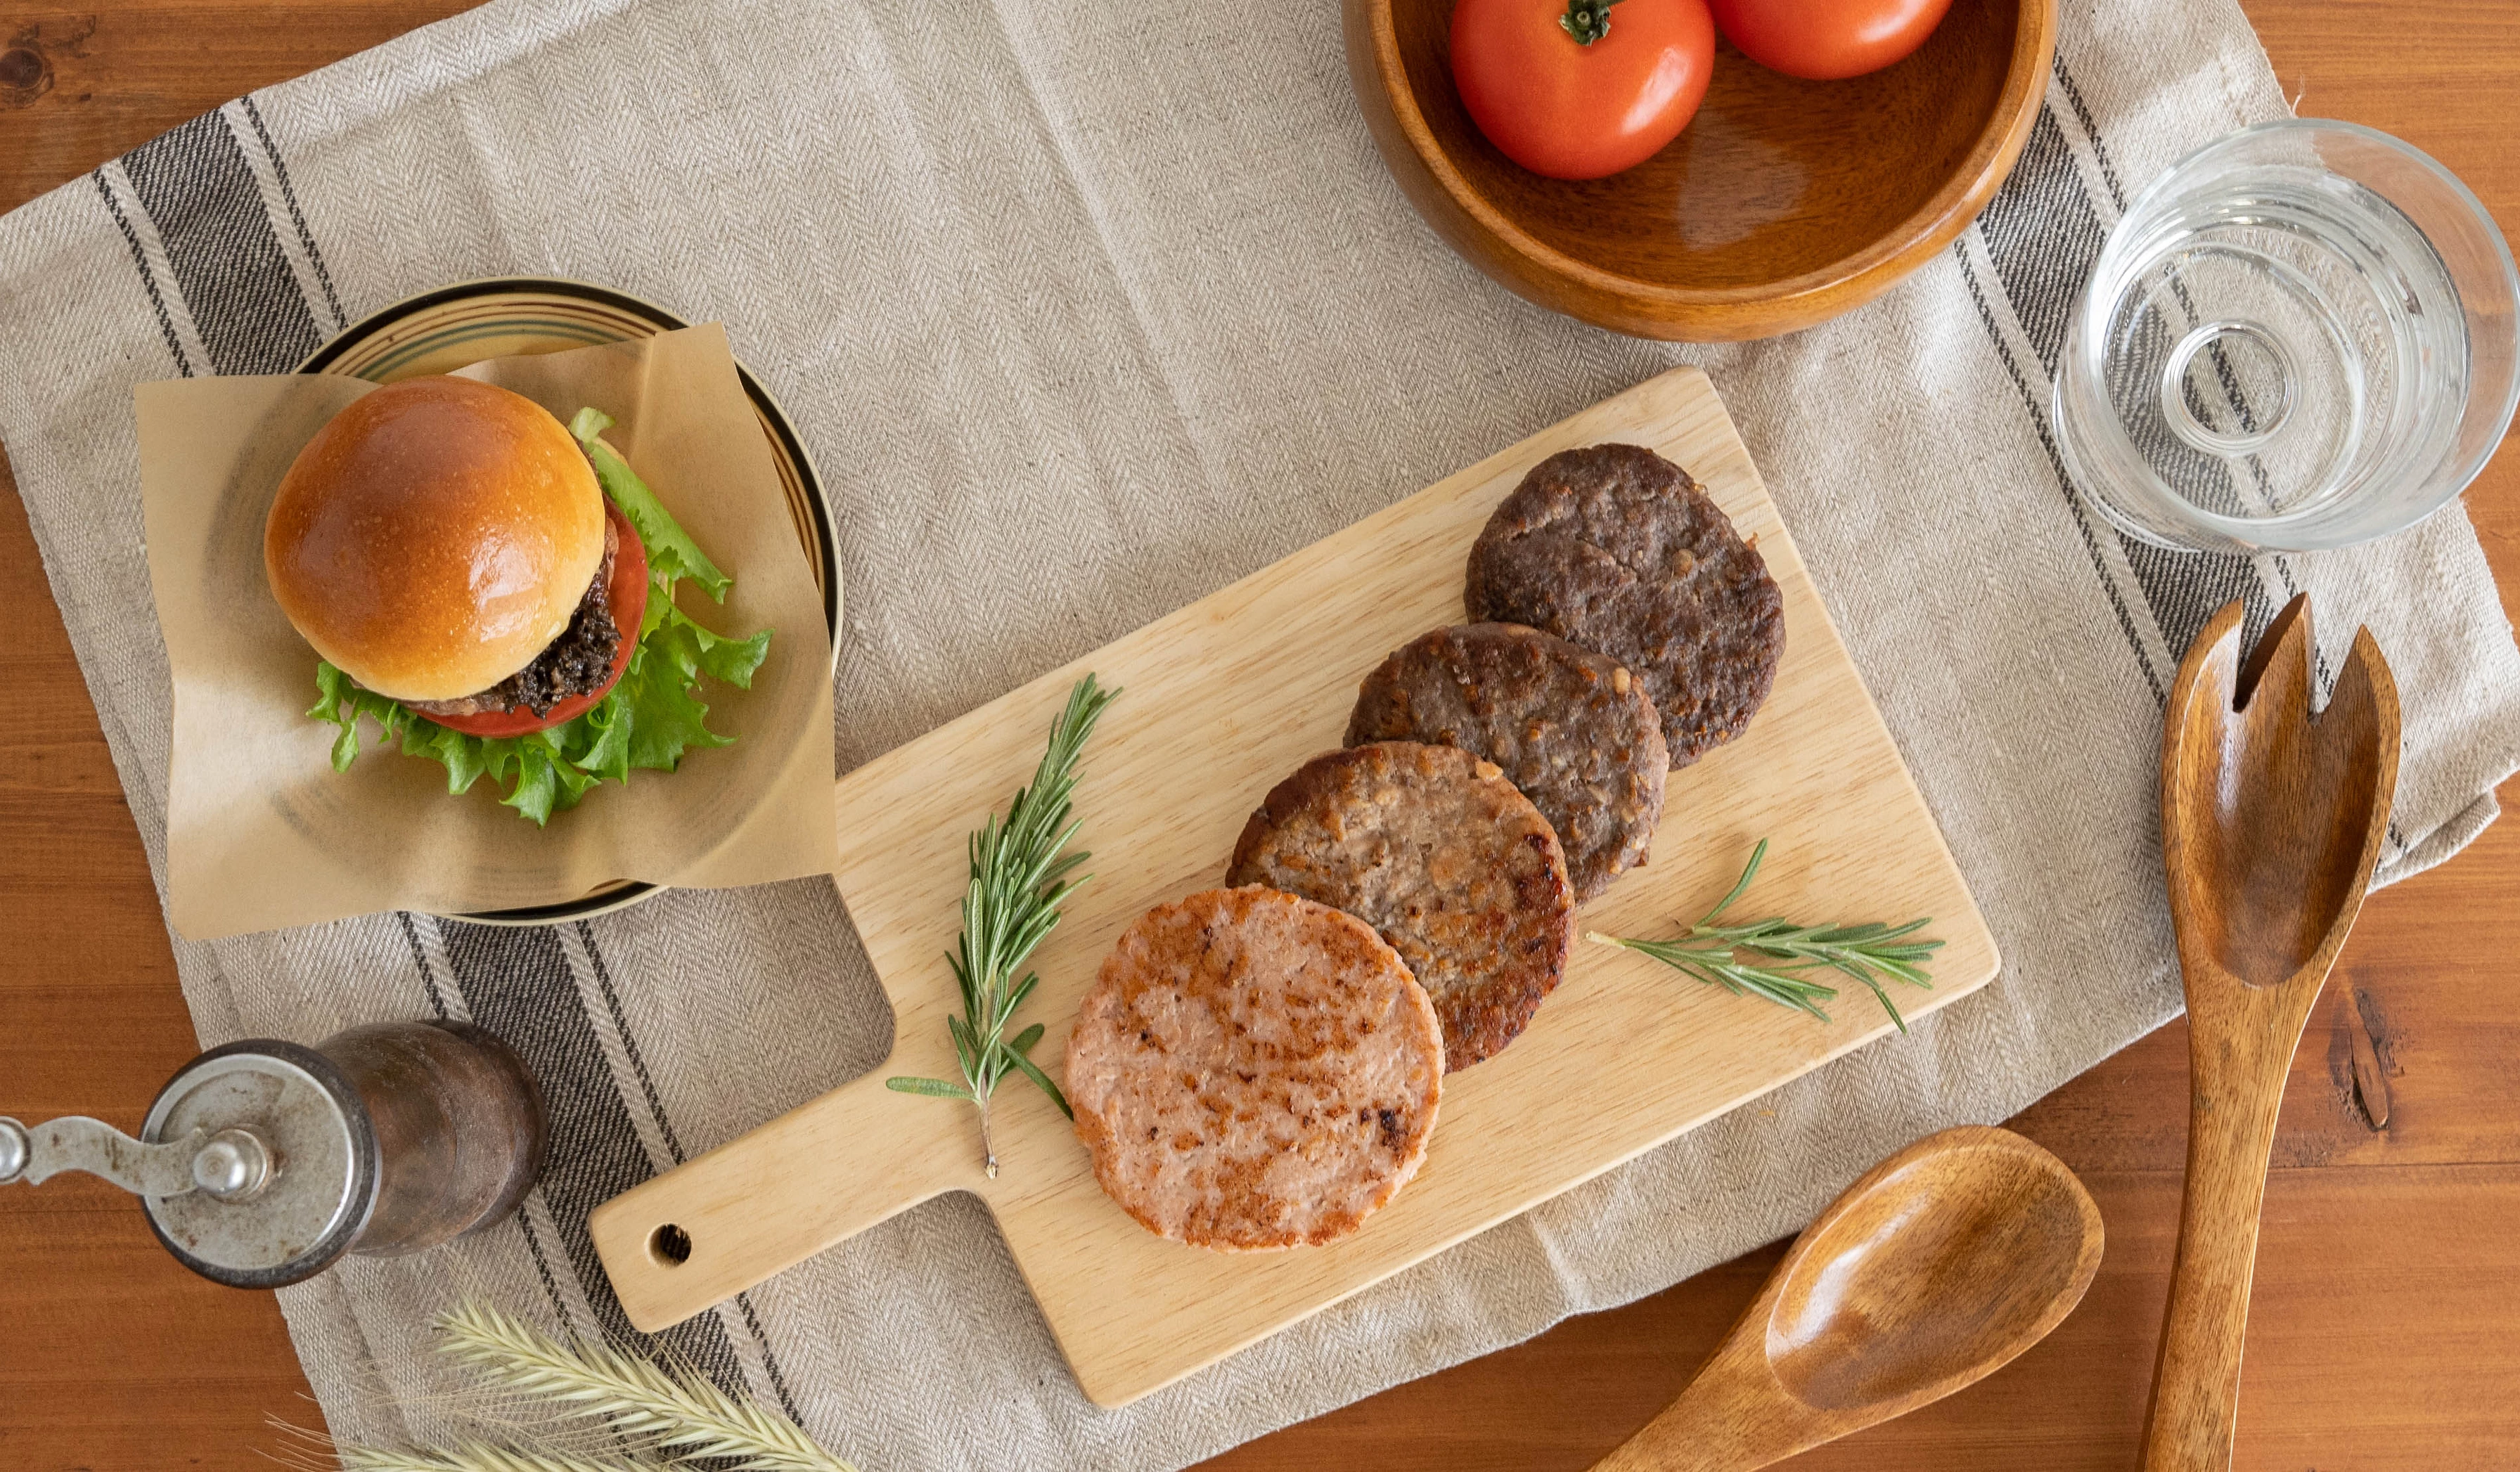 「銀のさら」のライドオンエクスプレスが植物肉「Green Meat」使用の新ブランドを展開─植物肉と牛肉ブレンドのオリジナルパティ